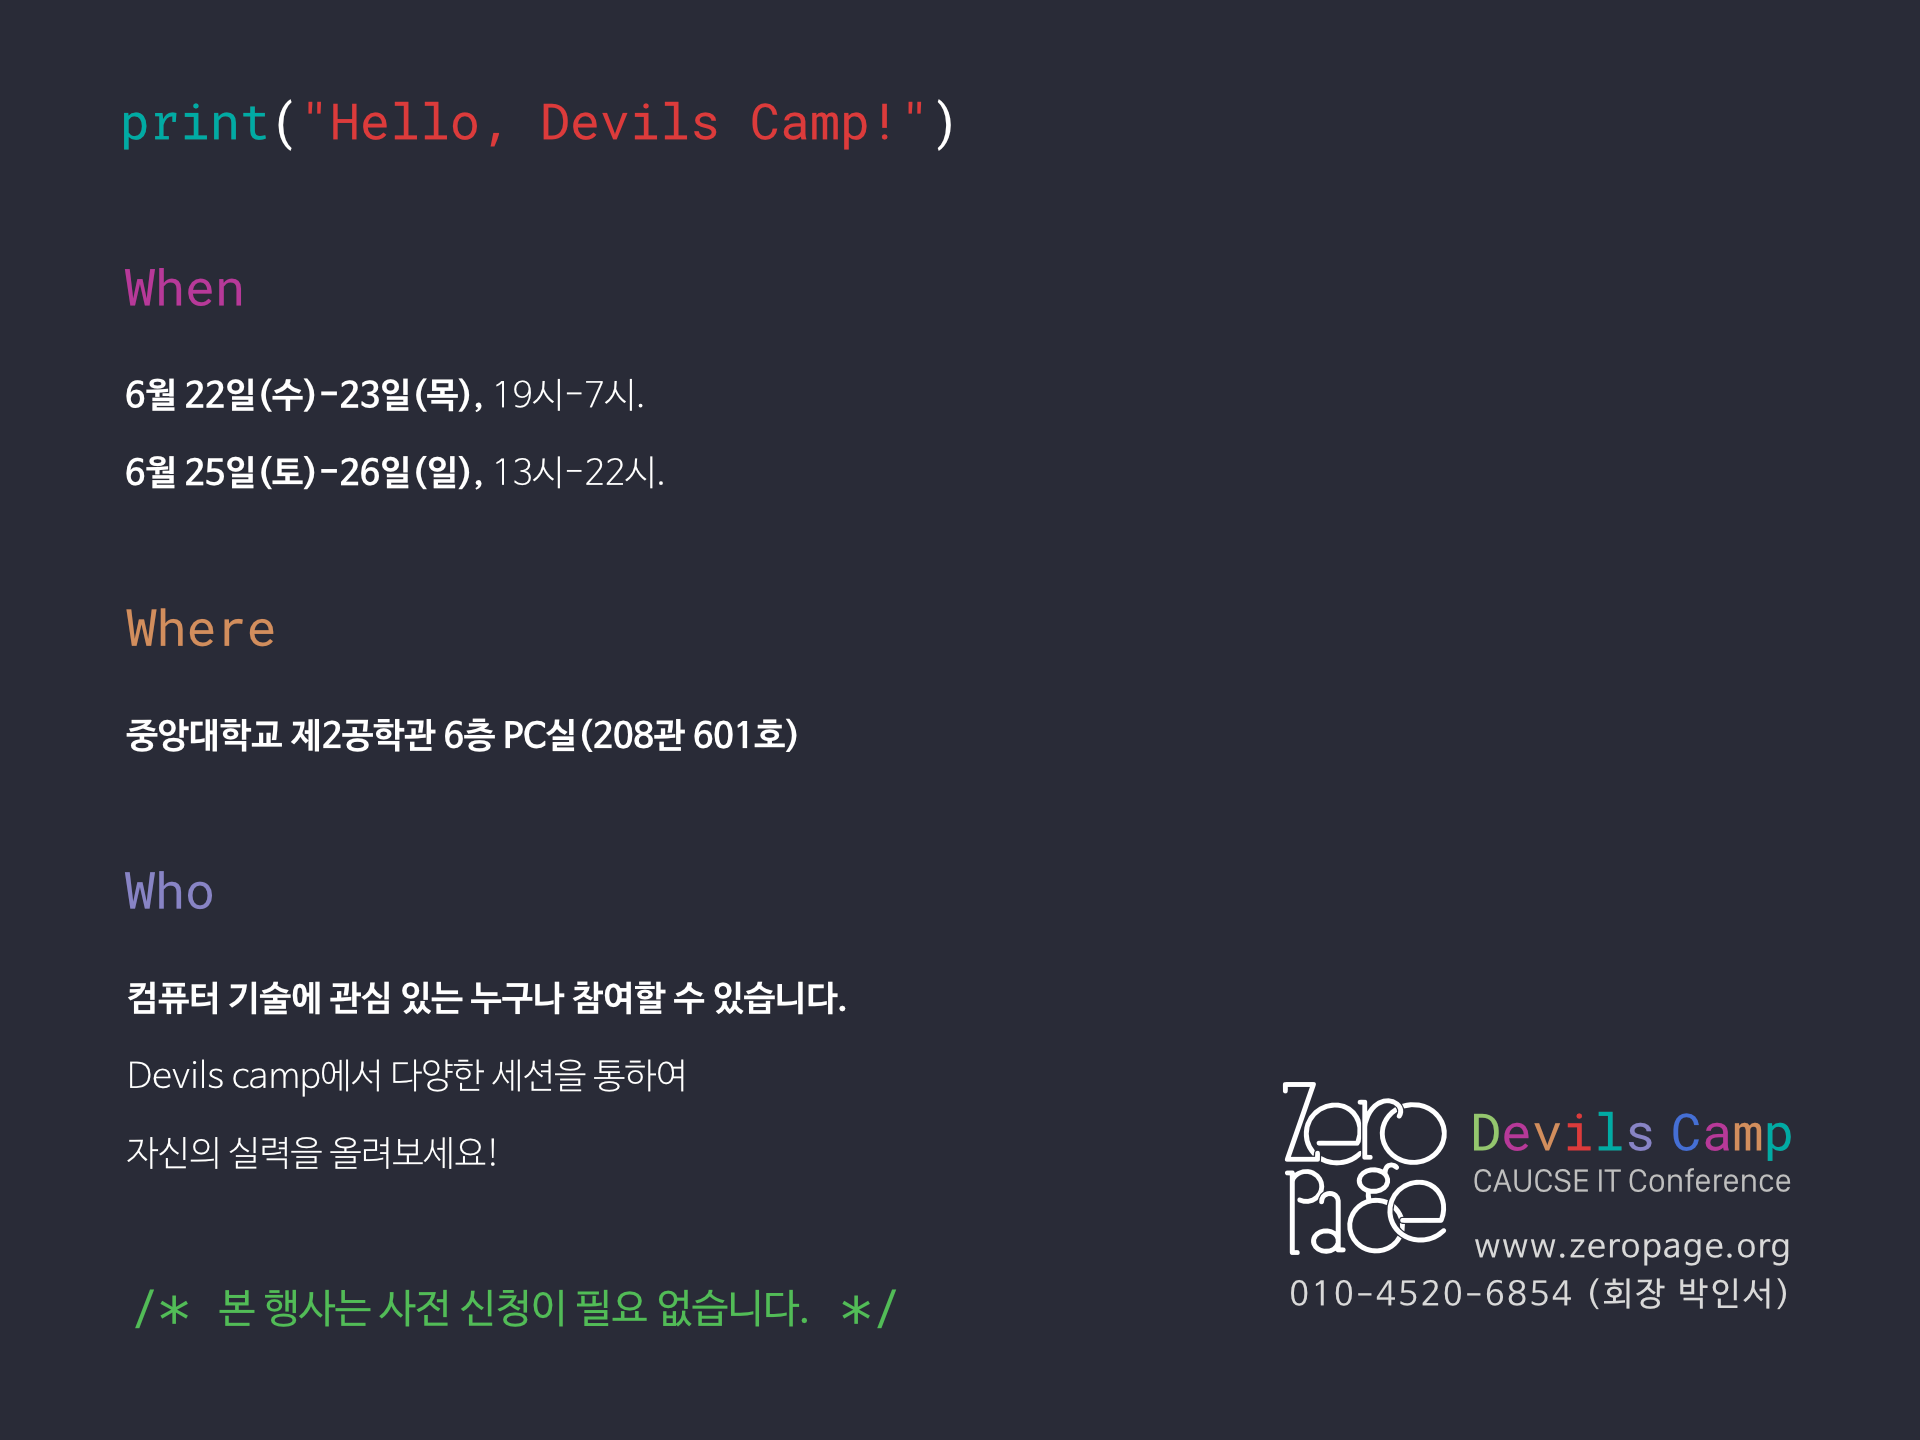 Devils_Camp.png